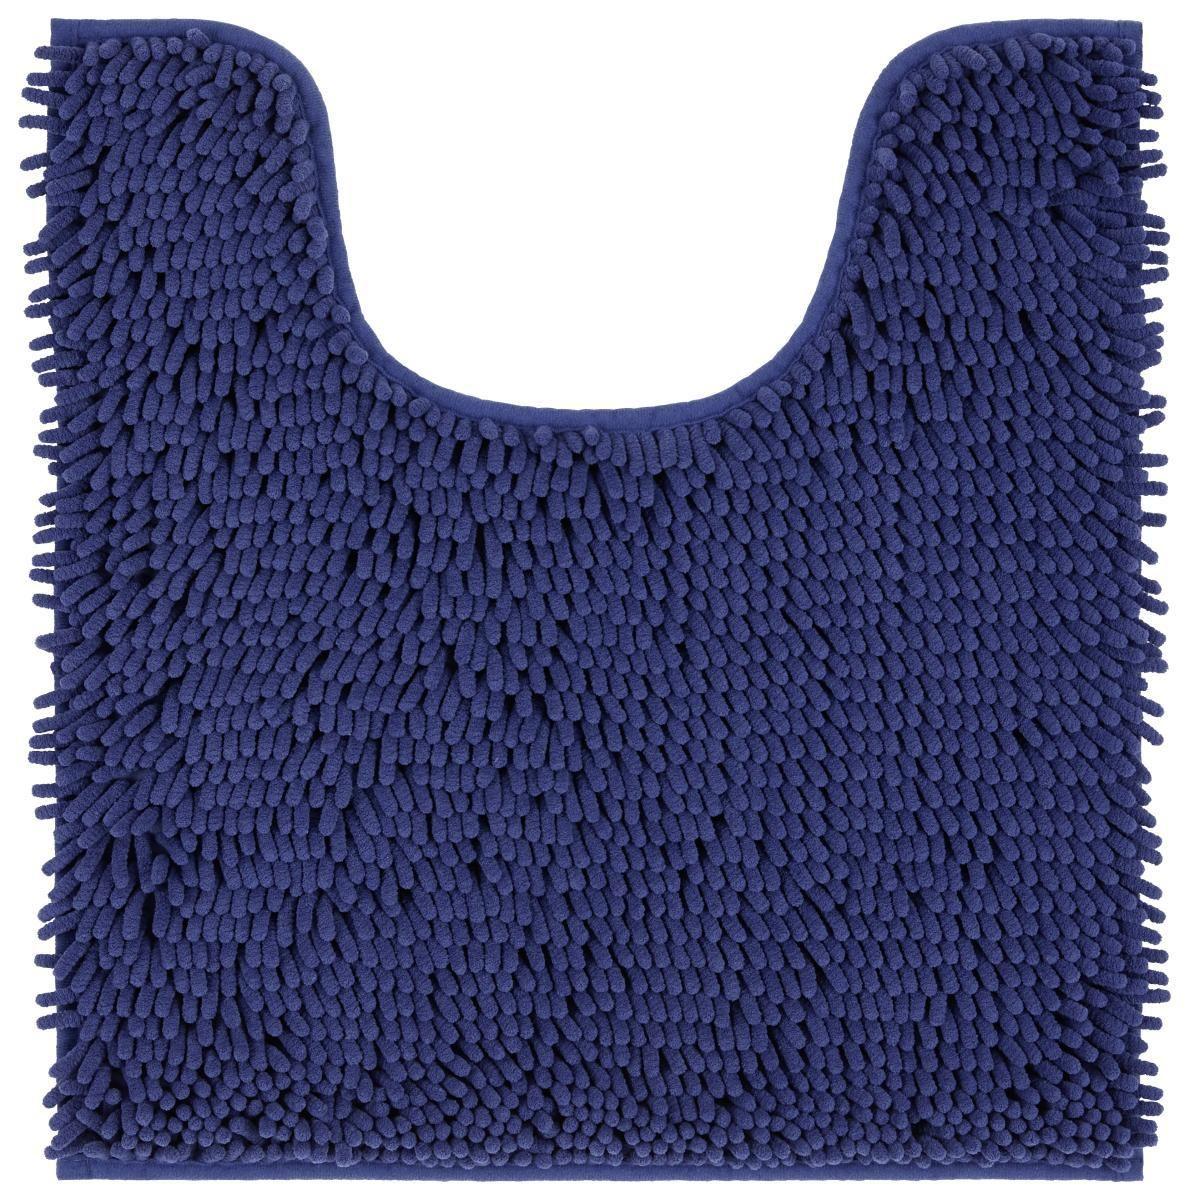 WC-Vorleger mit Ausschnitt Liliane Marine 45x50 cm - Blau, KONVENTIONELL, Textil (45/50cm) - Ondega